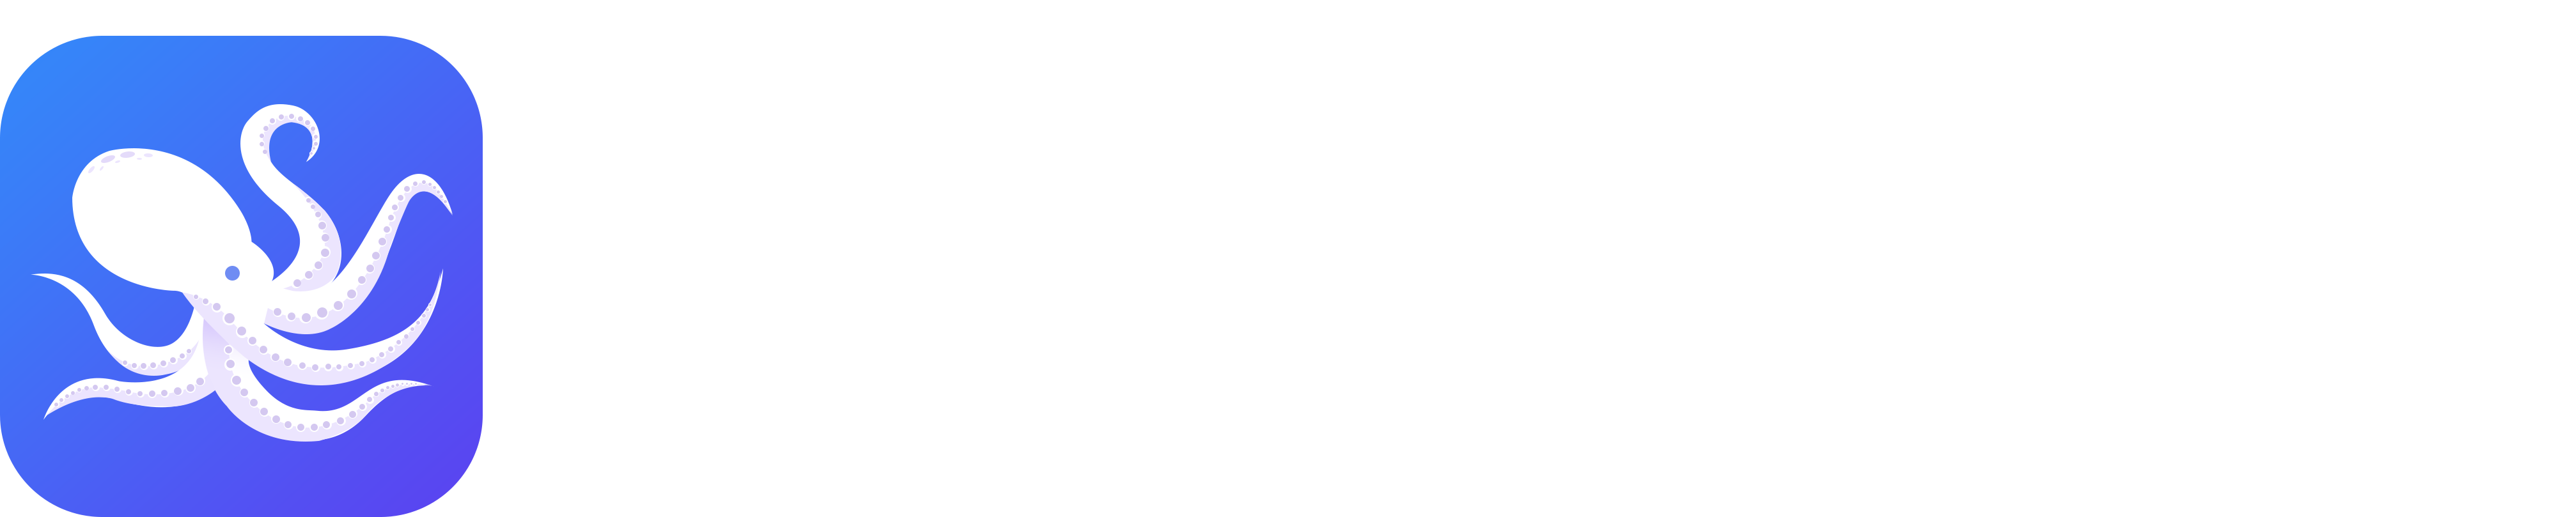 normal logo white text v2